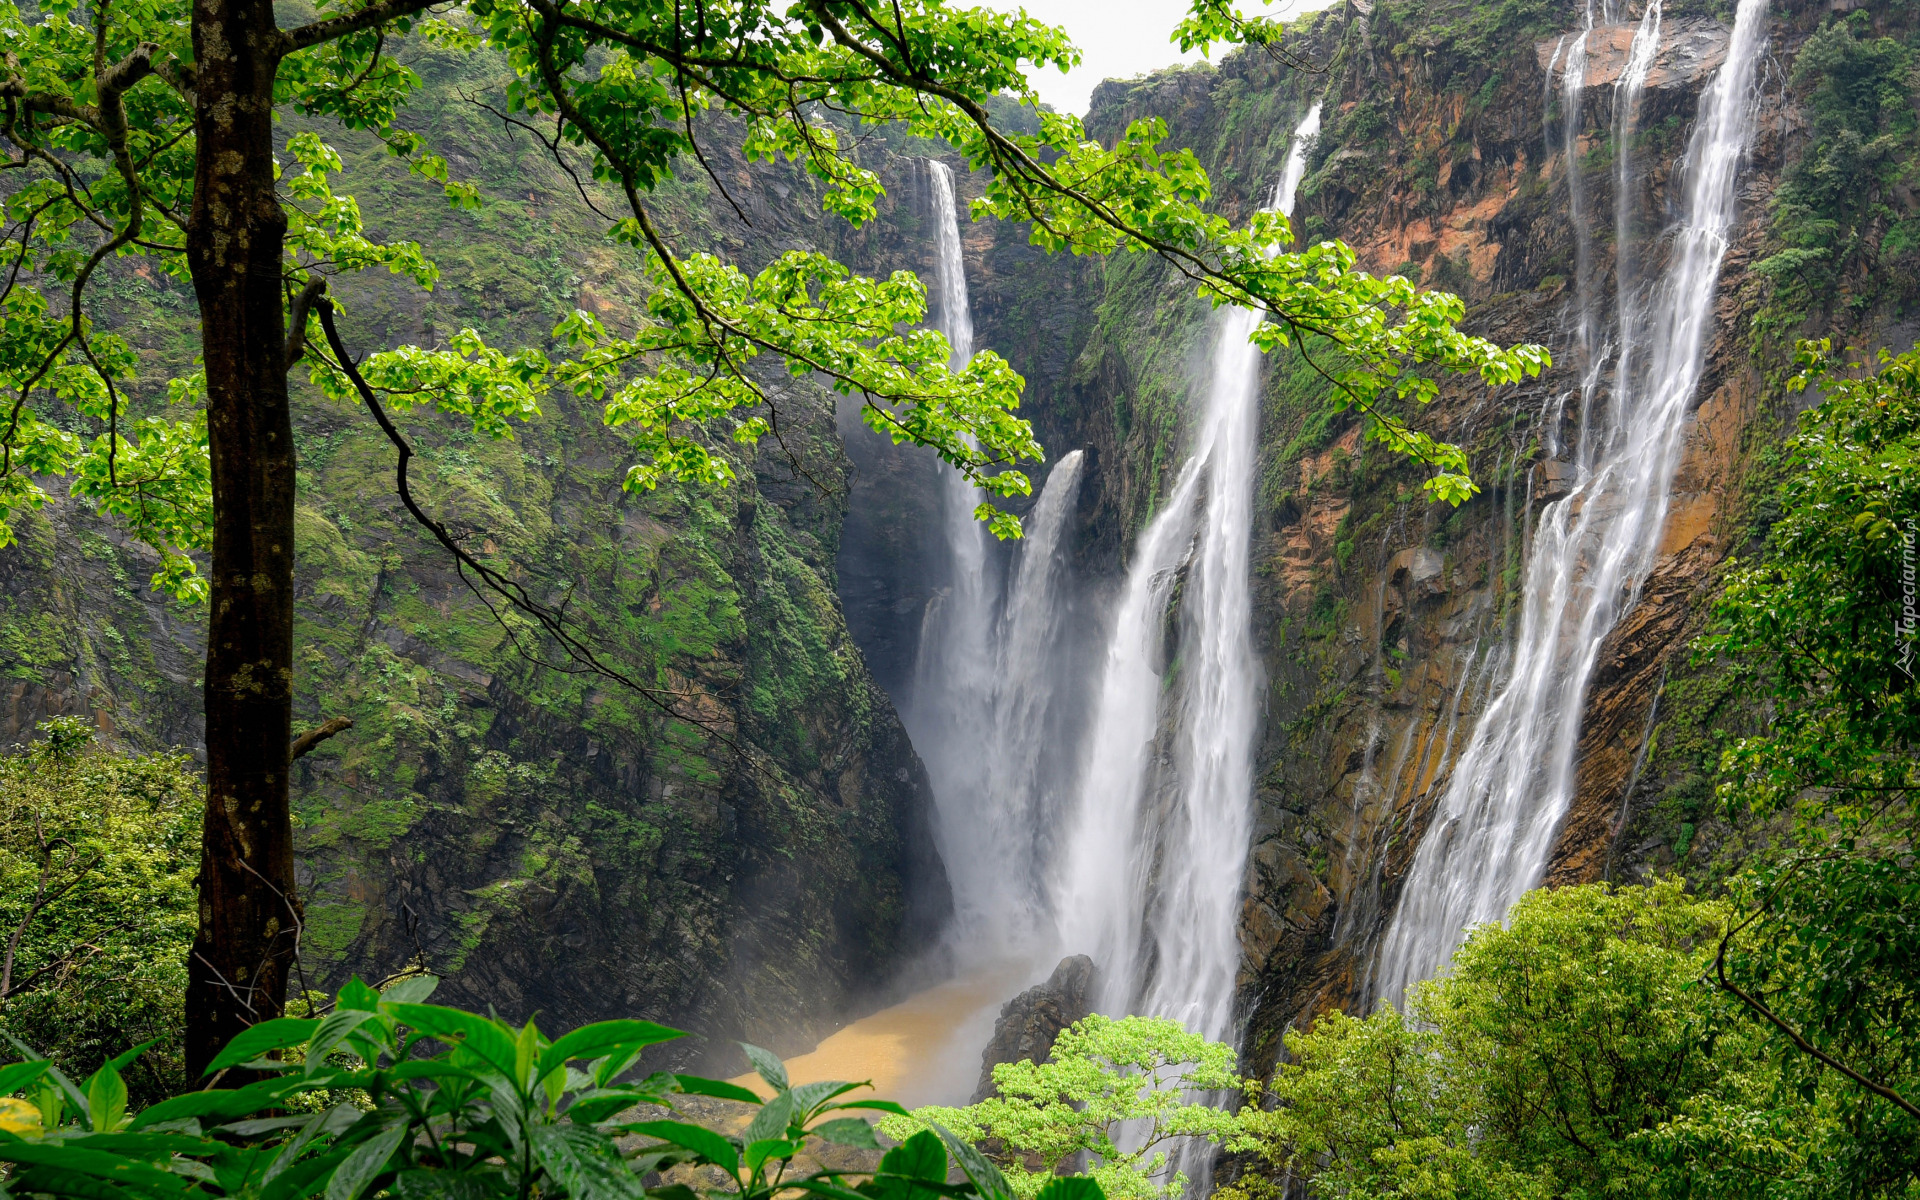 Indie, Stan Karnataka, Wodospad Dźog, Waterfalls Jog, Las, Drzewa, Skała, Rośliny